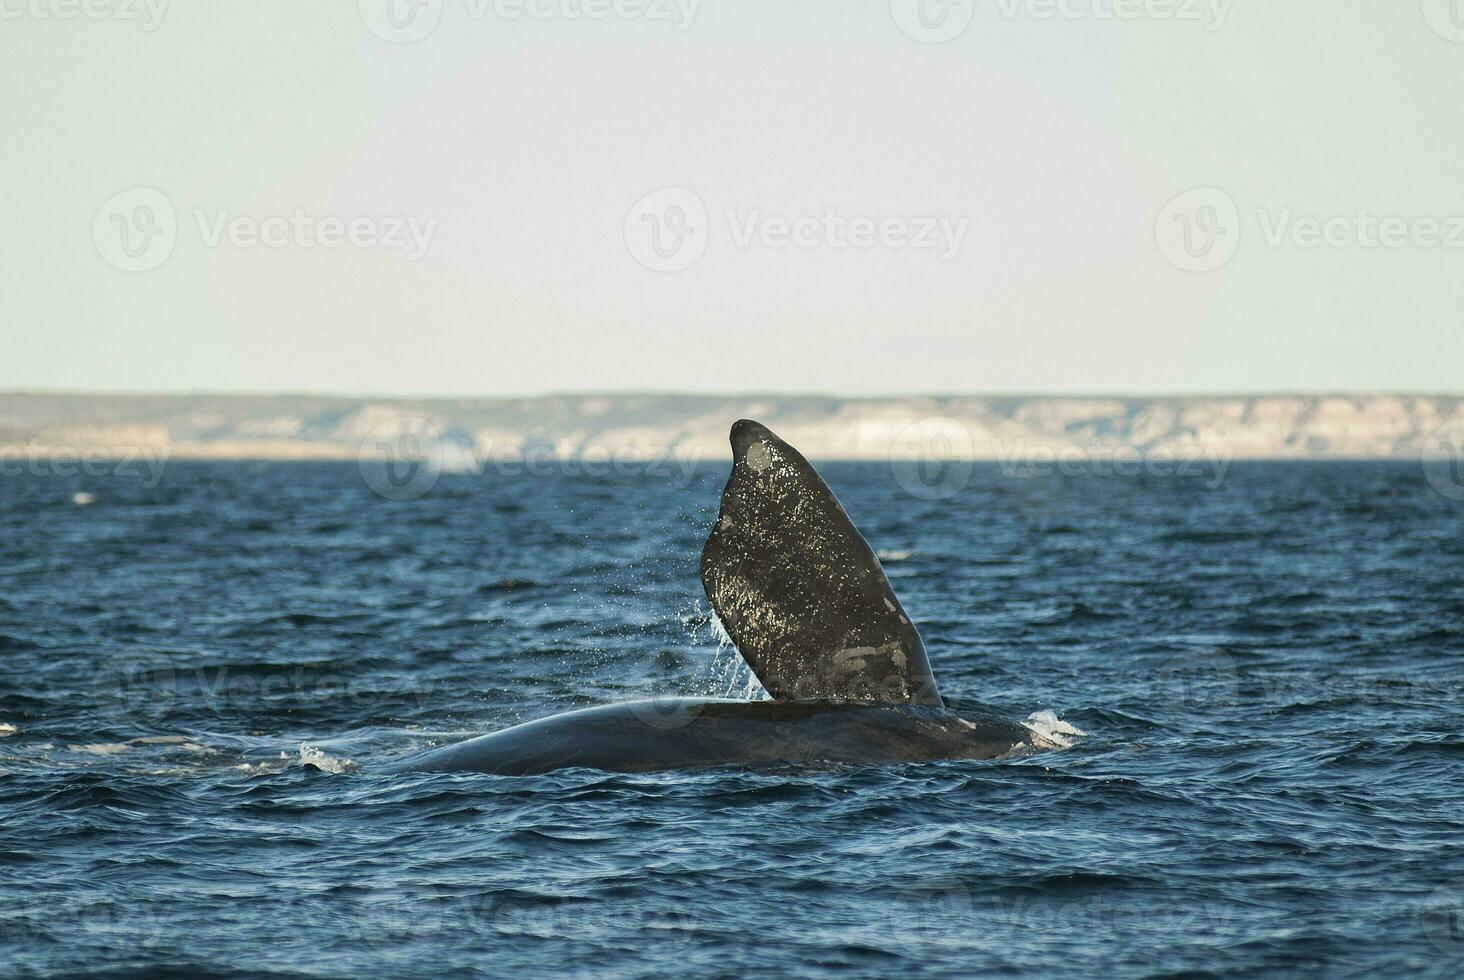 sohutern certo baleia rabo peitoral barbatana, ameaçadas de extinção espécies, Patagônia, Argentina foto